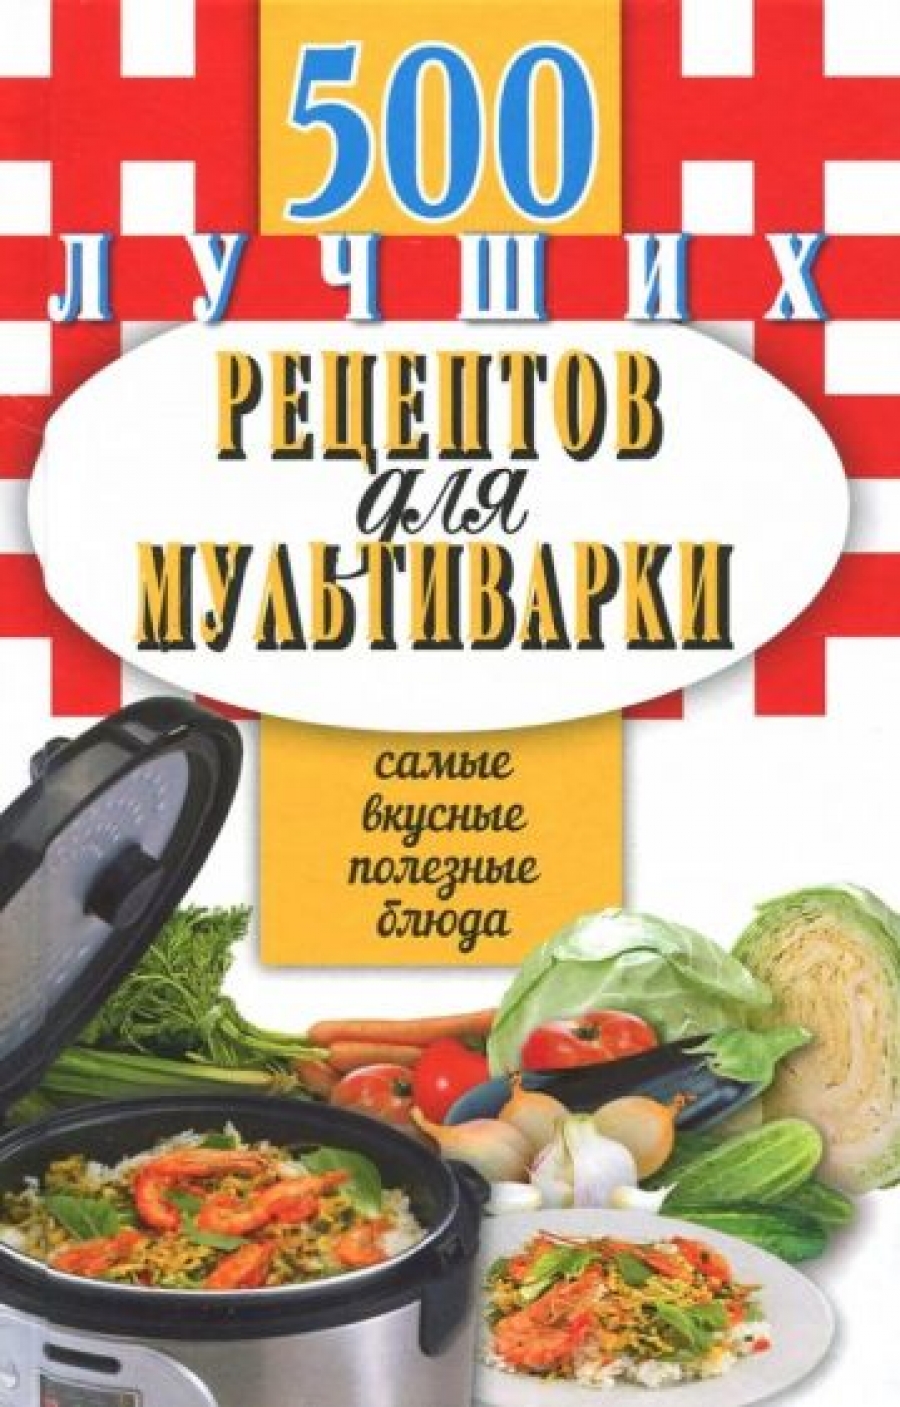 Иванова Е. 500 лучших рецептов для мультиварки. Самые вкусные, полезные блюда 